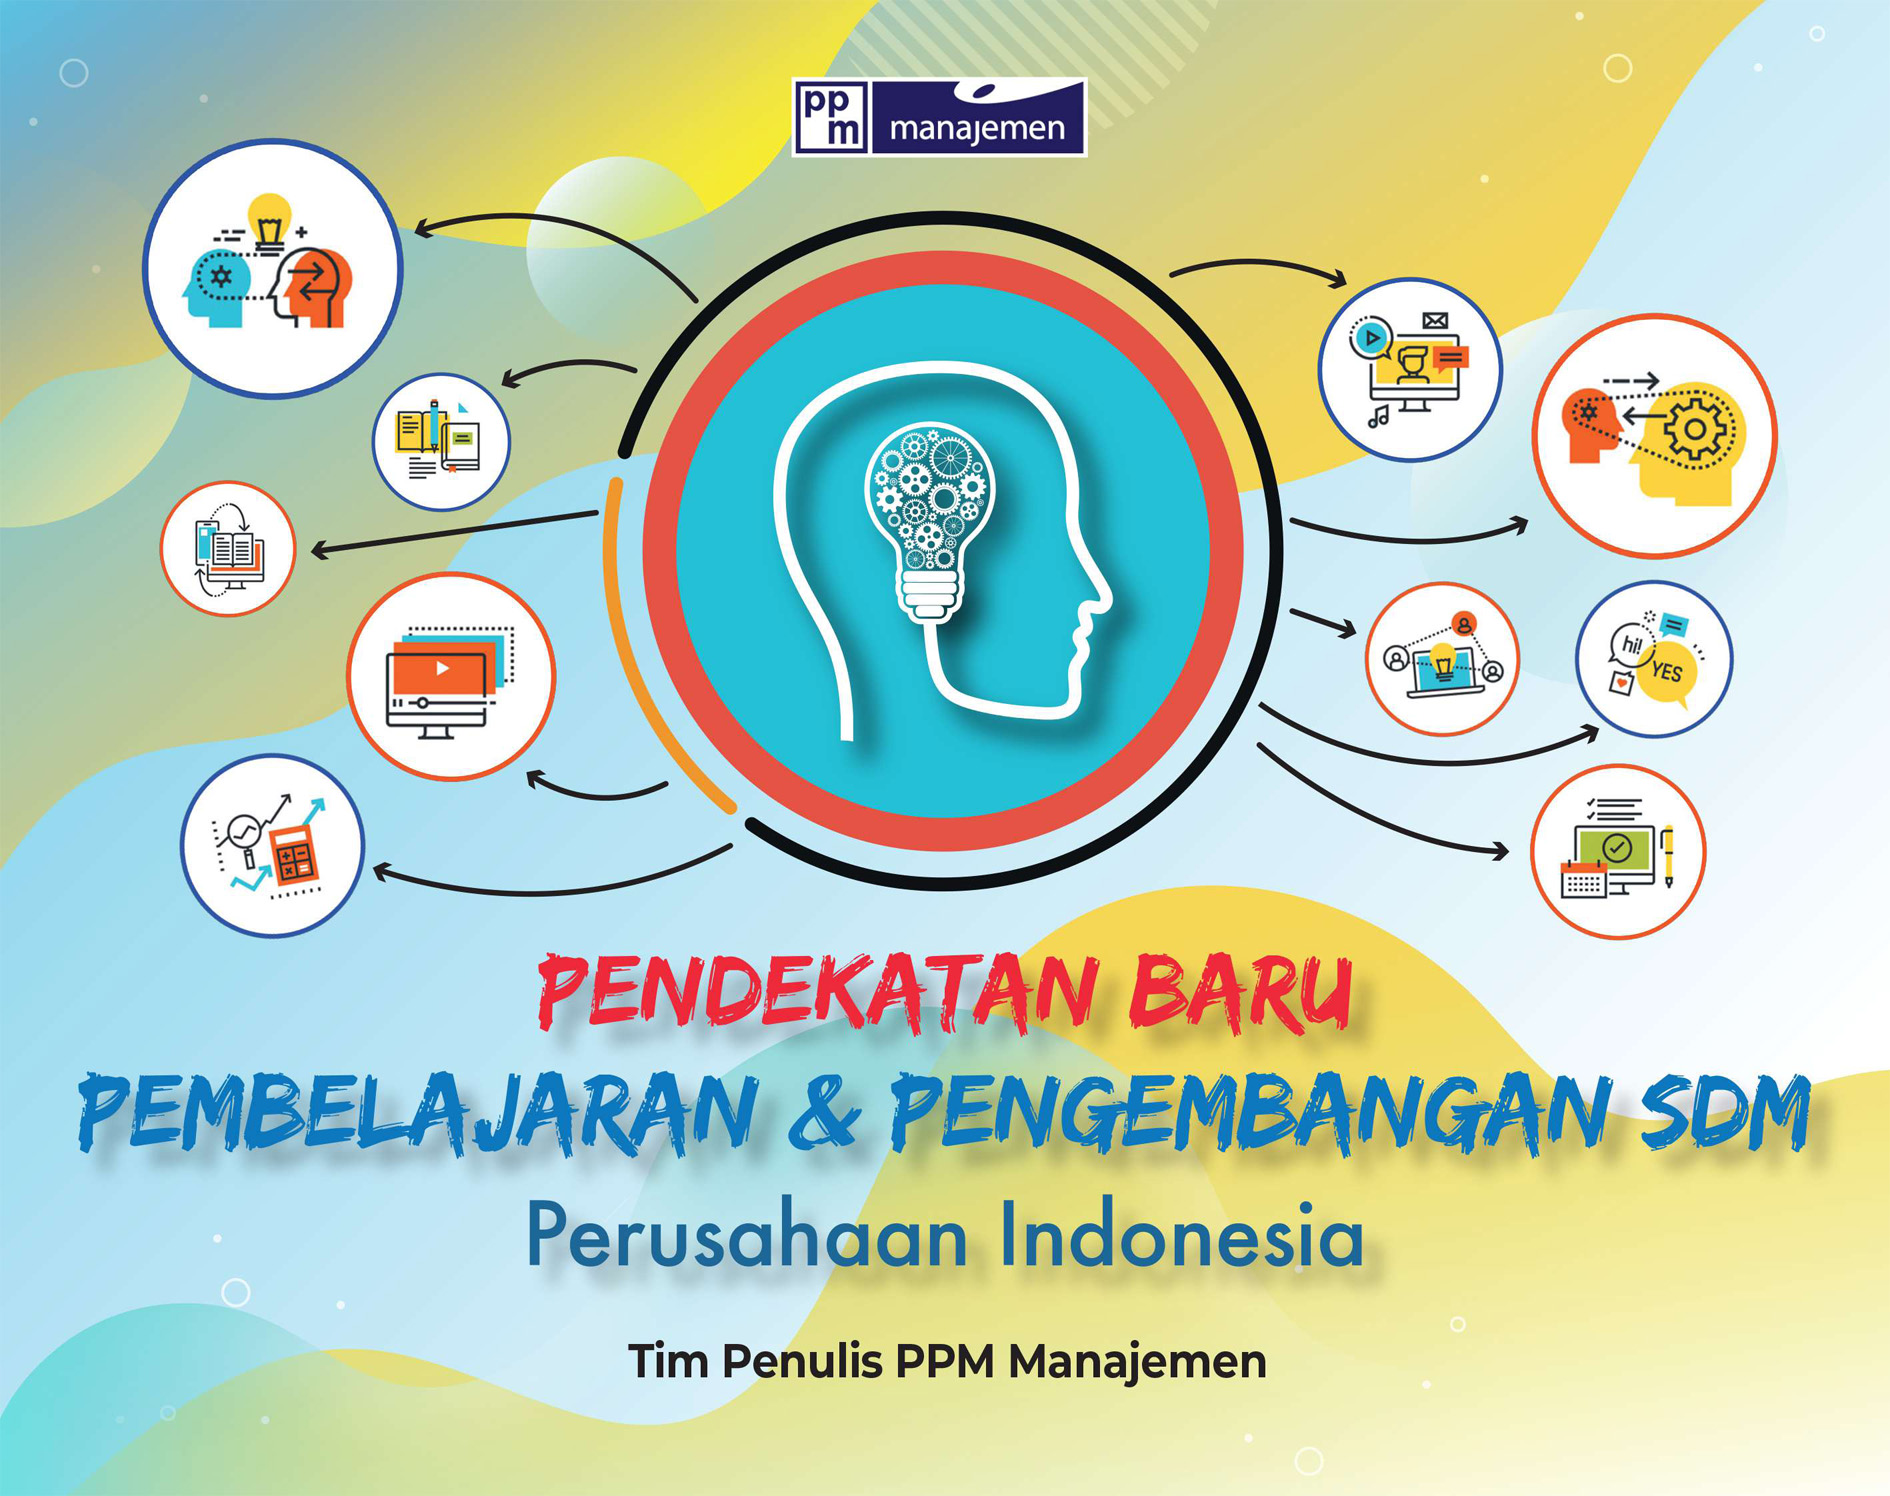 Pendekatan baru pembelajaran & pengembangan SDM perusahaan Indonesia [sumber elektronis]